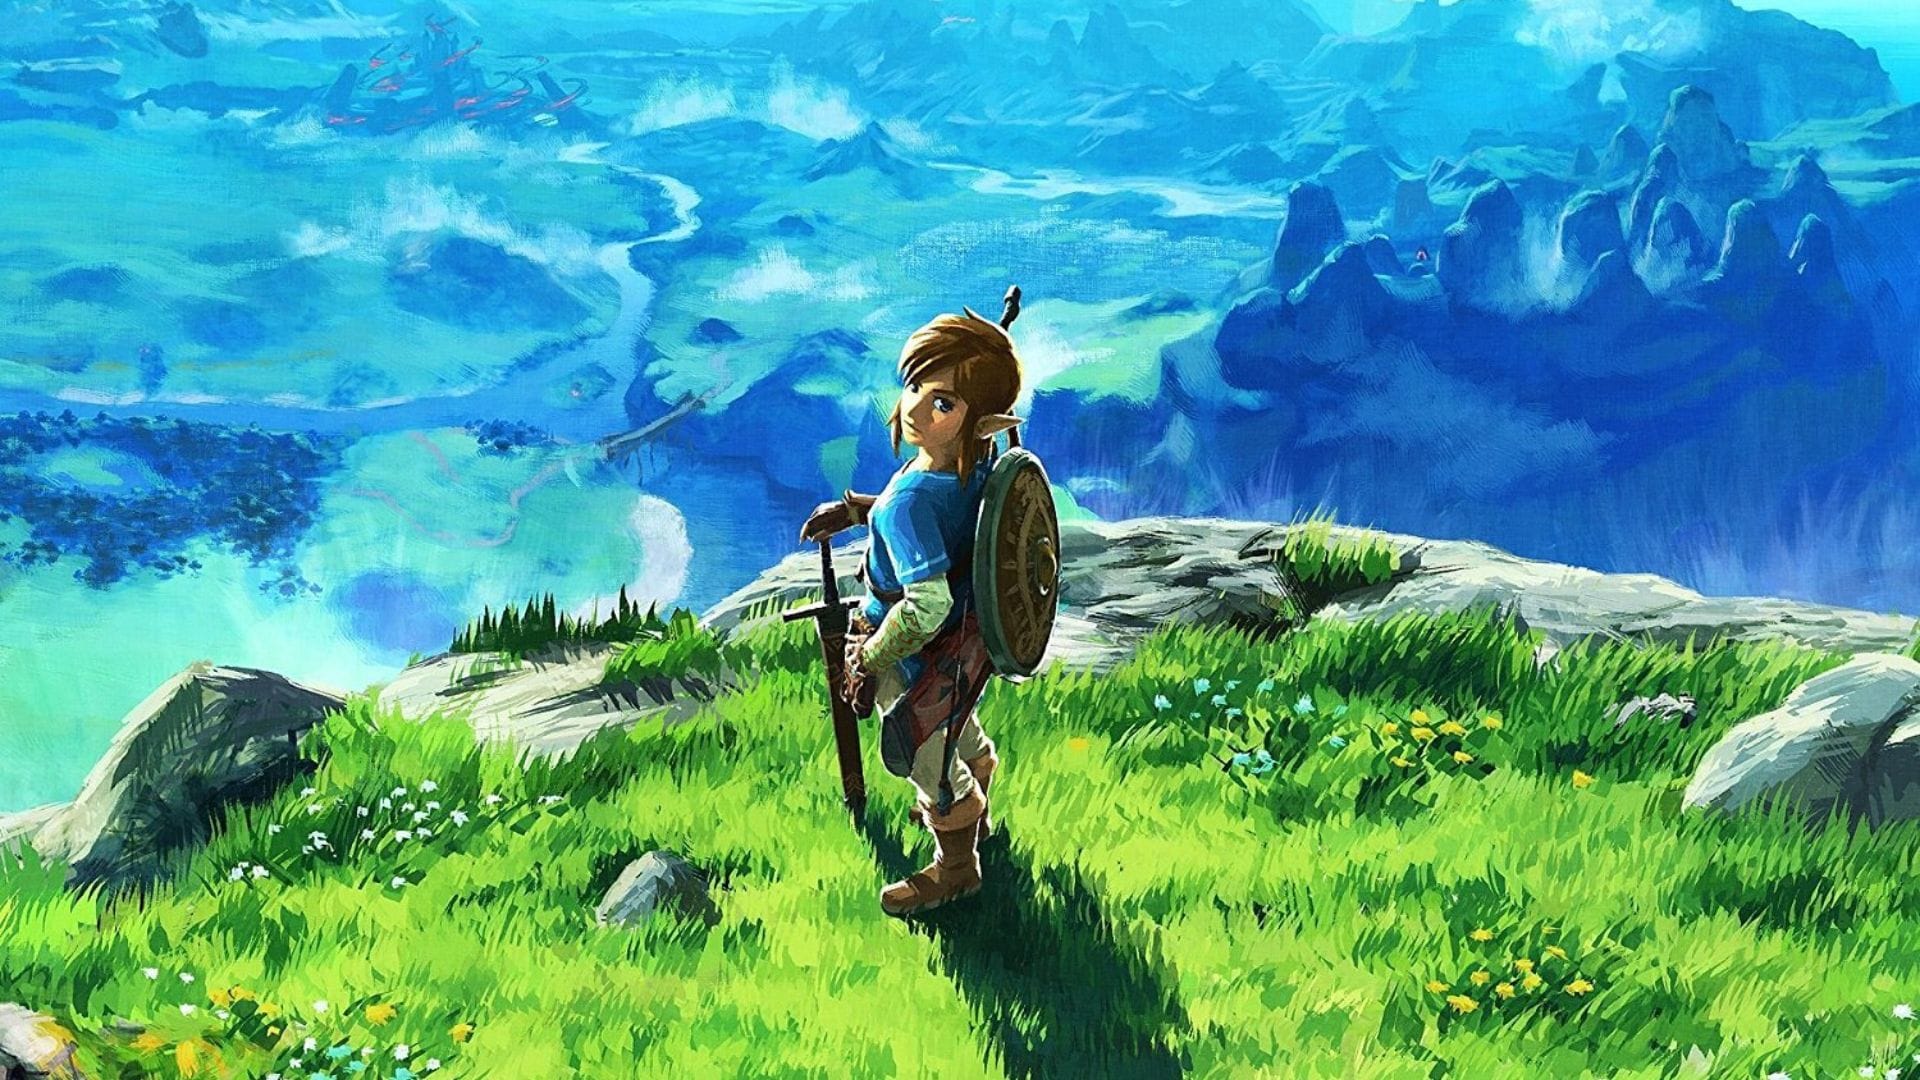 Zelda fans call for Wind Waker HD on Switch following Breath of